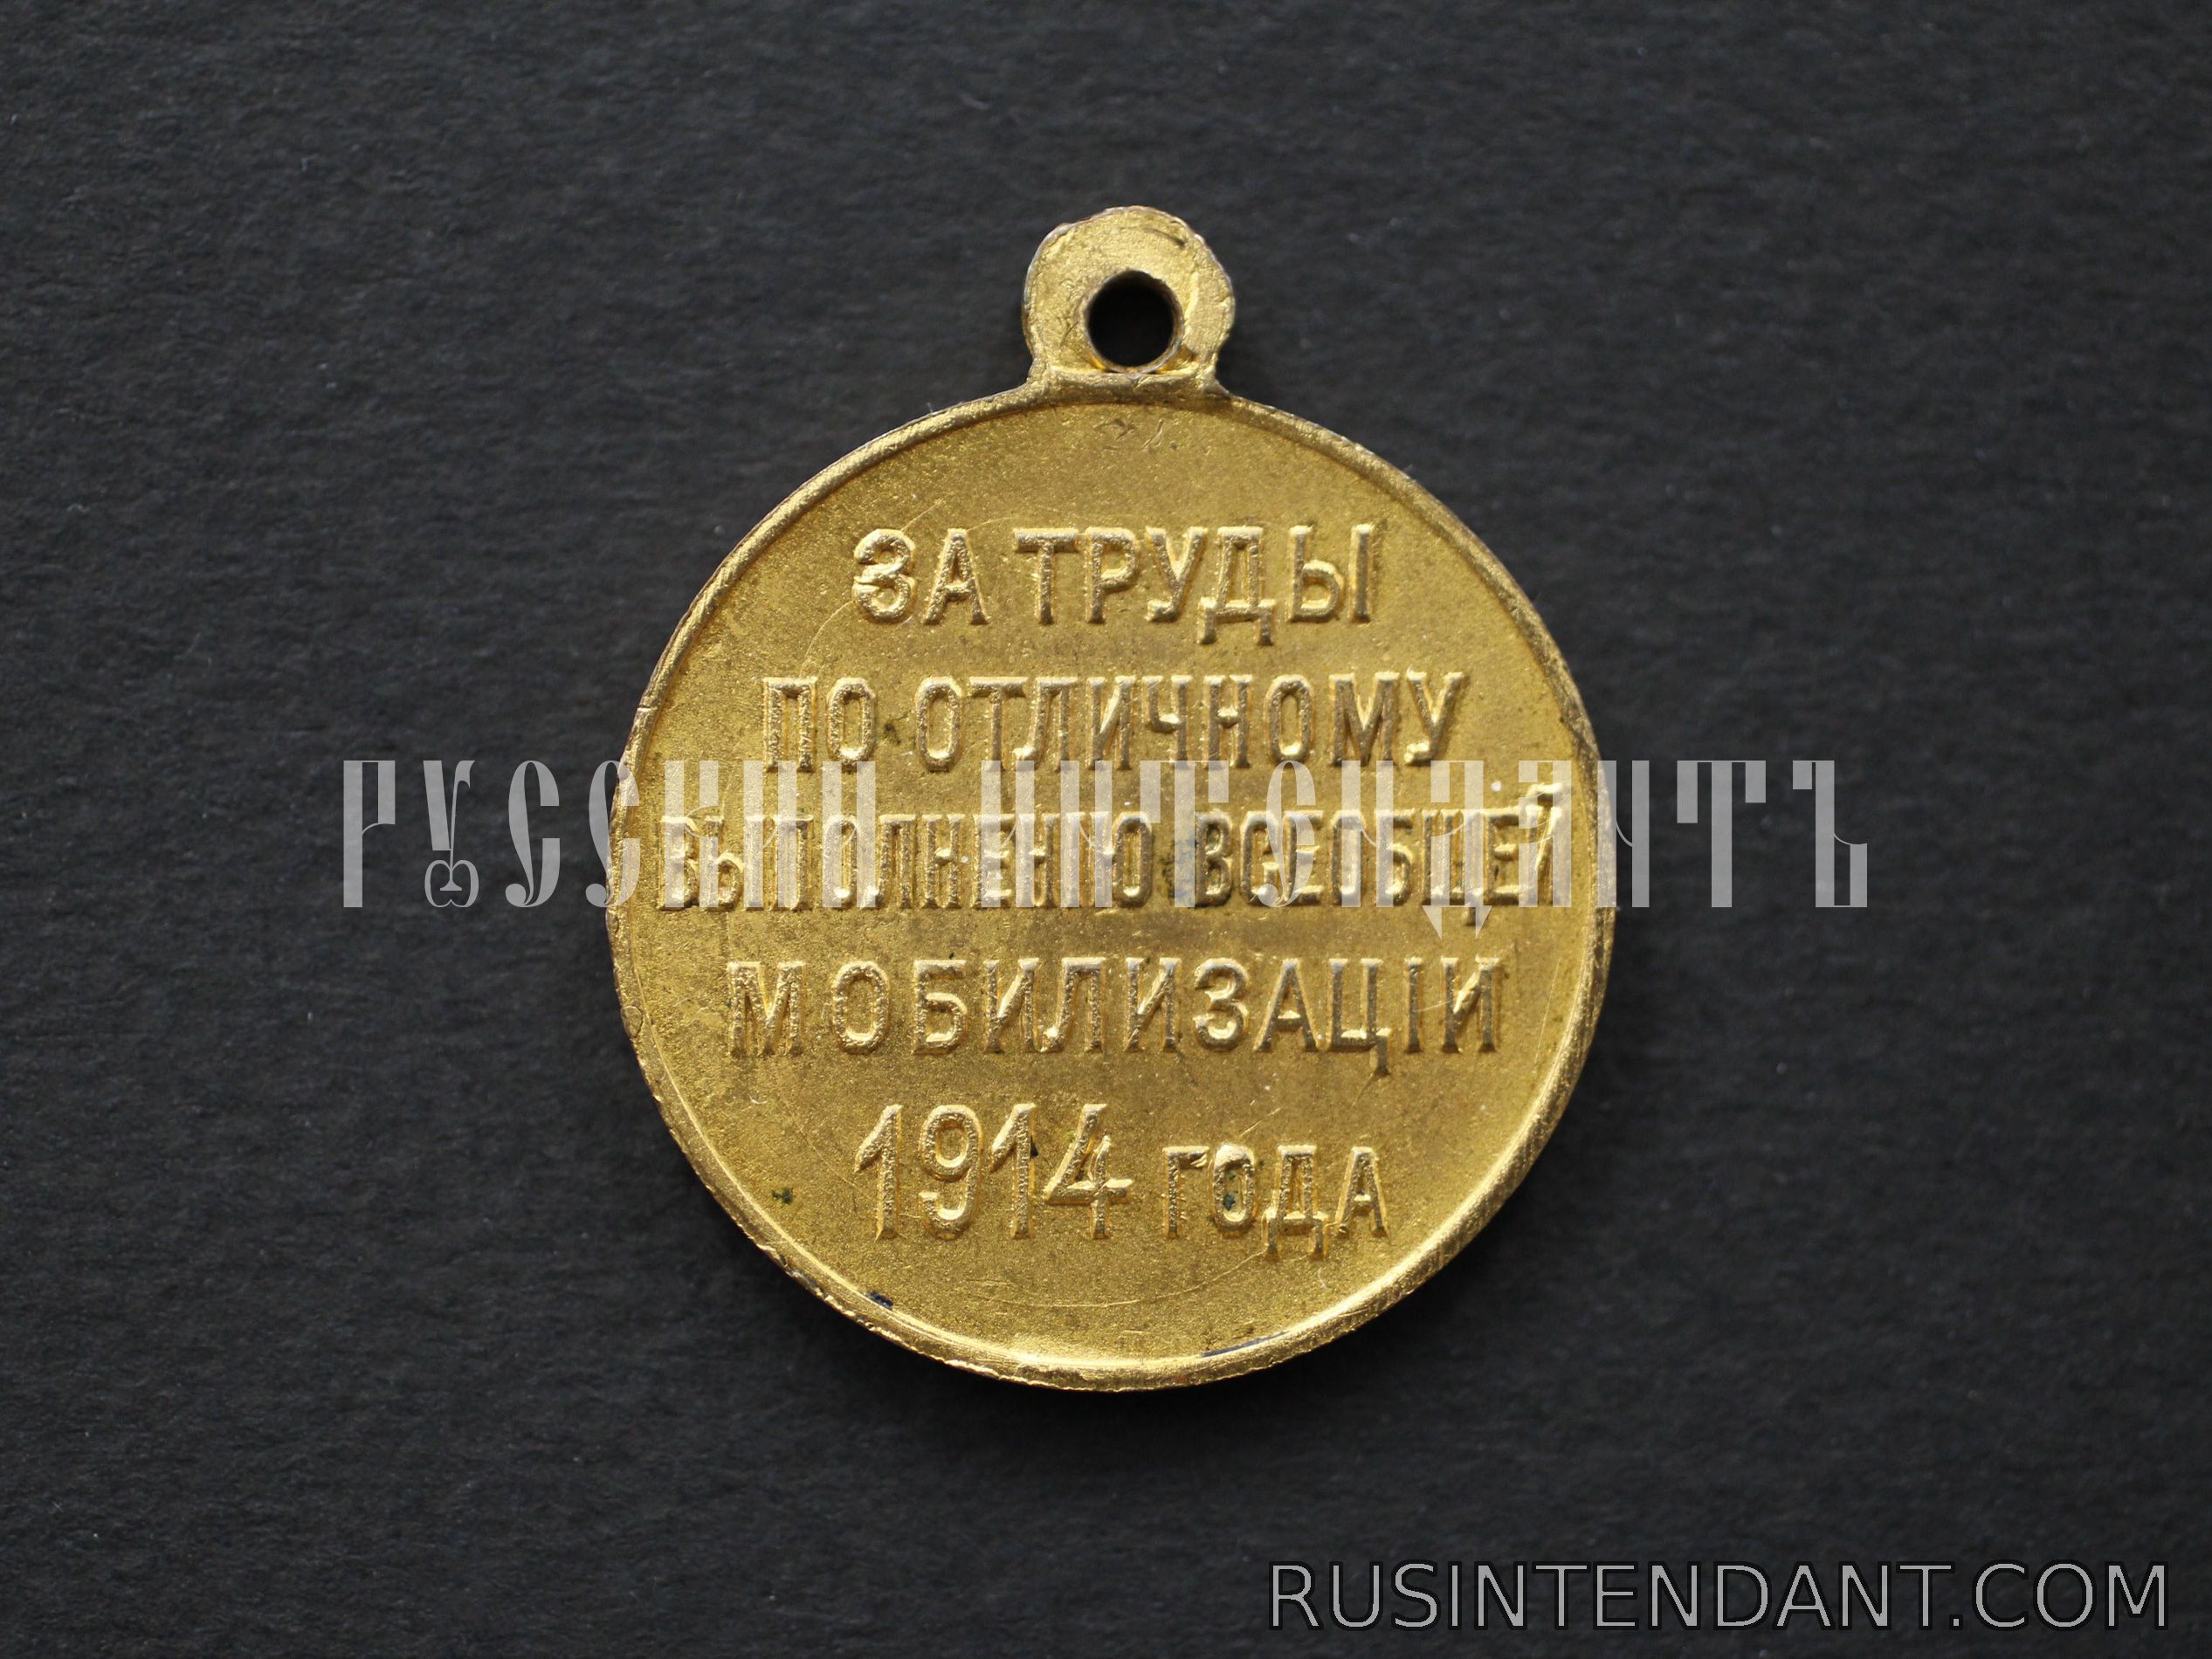 Фото 2: Медаль «За труды по отличному выполнению всеобщей мобилизации 1914 г.» 